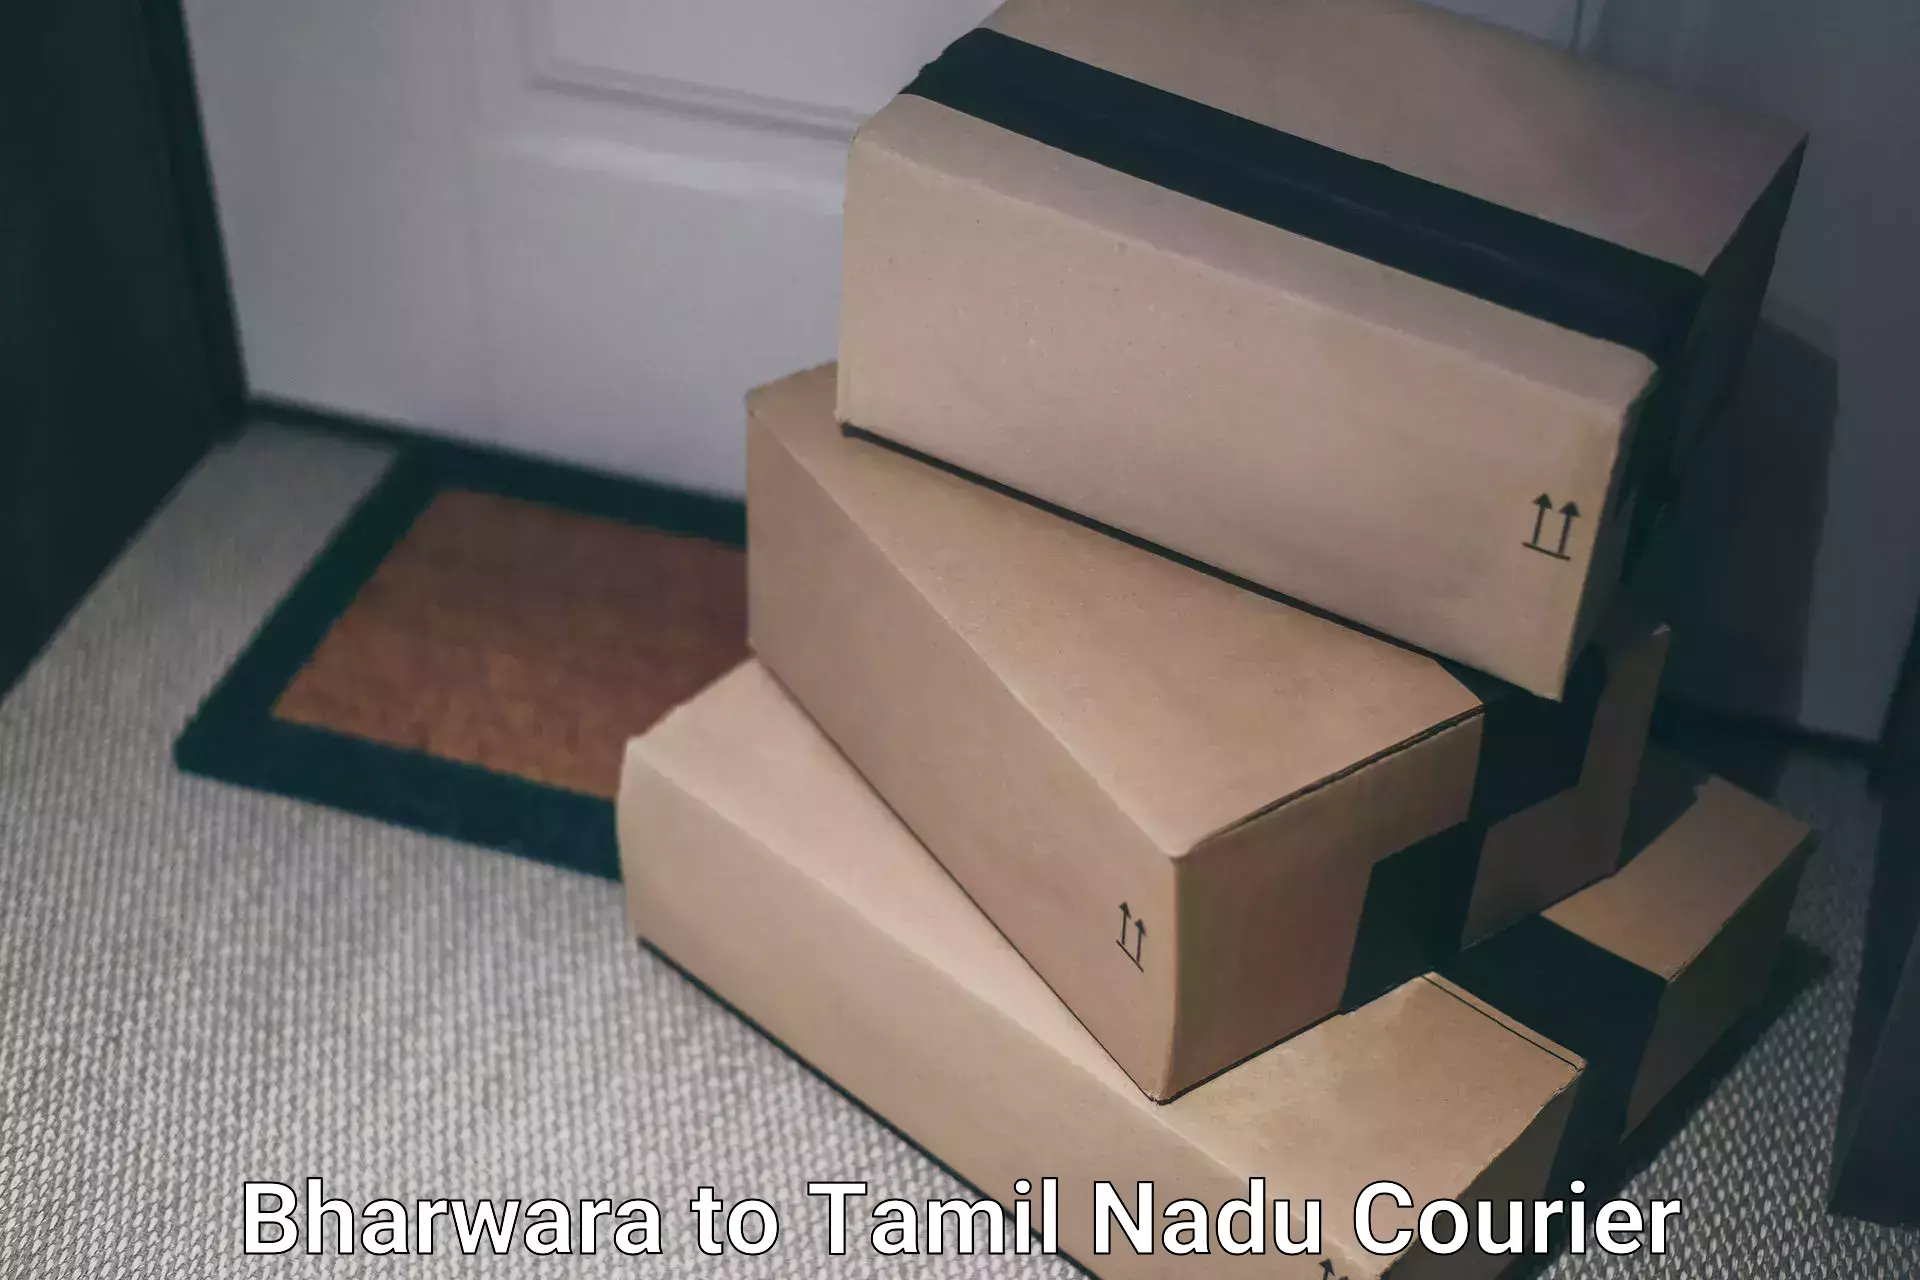 Door-to-door freight service Bharwara to Tamil Nadu